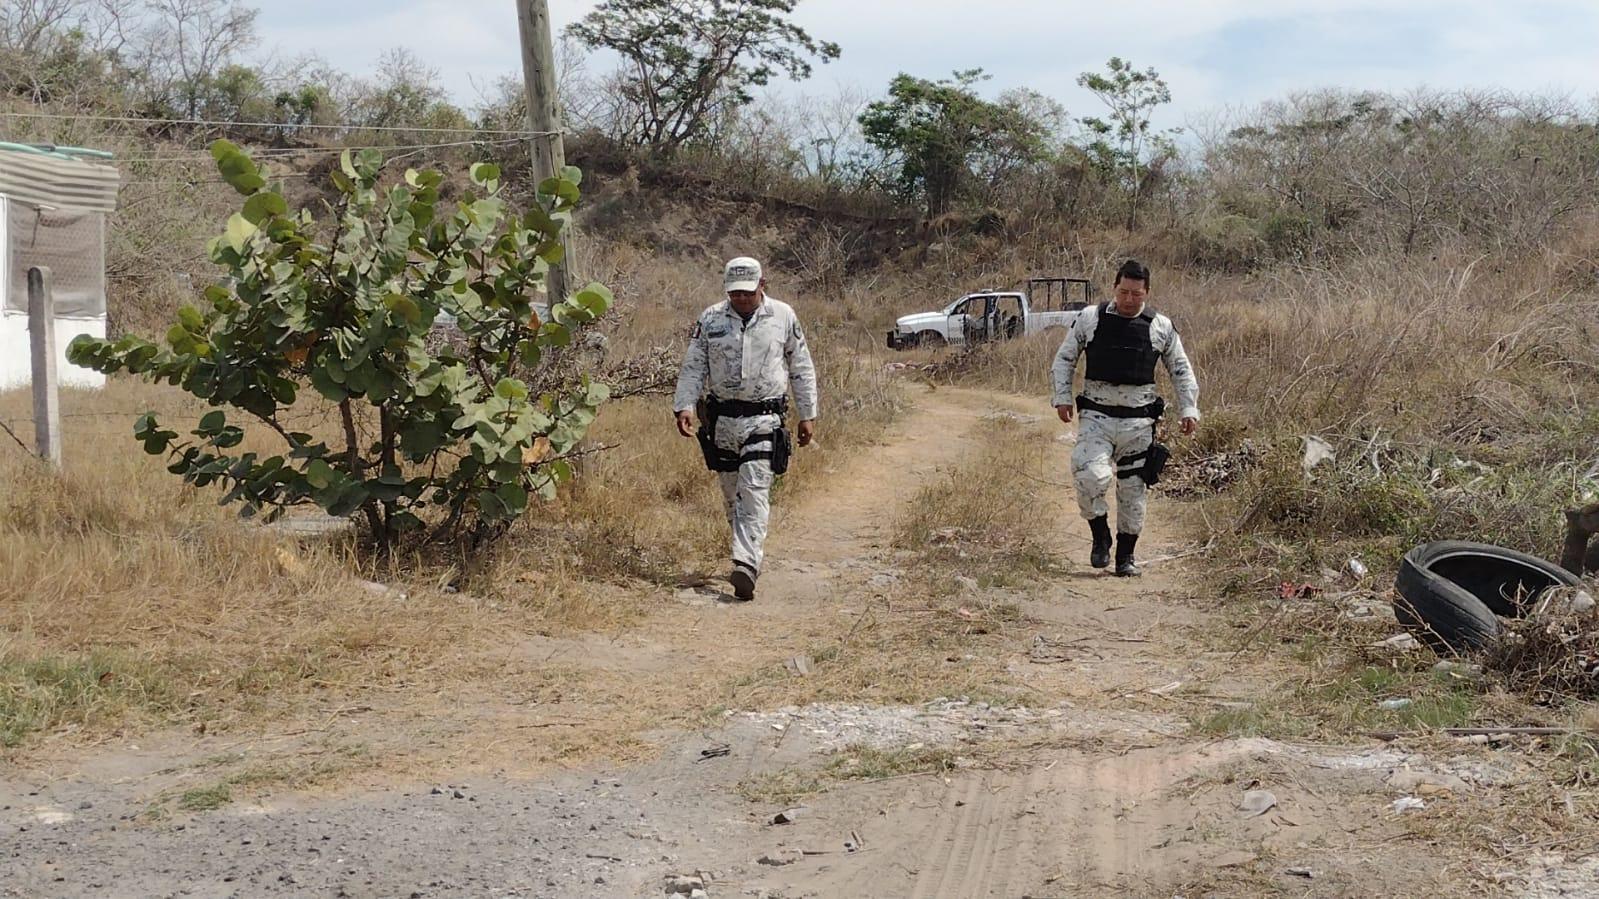 Hallan restos humanos en fraccionamiento de Veracruz, confirma fiscal